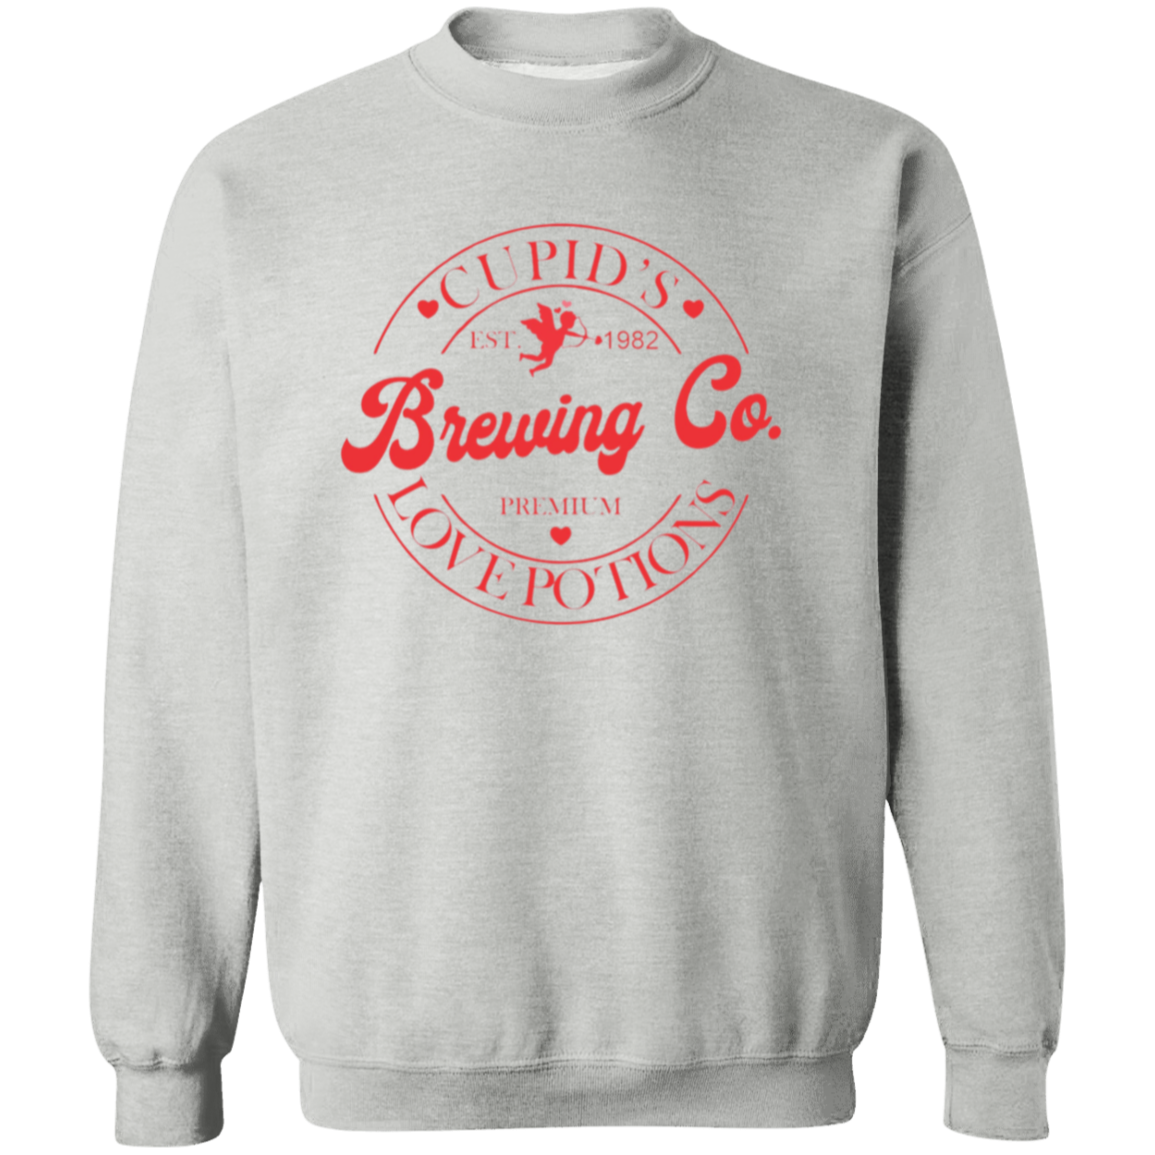 Cupid's Brewing Co. Sweatshirt